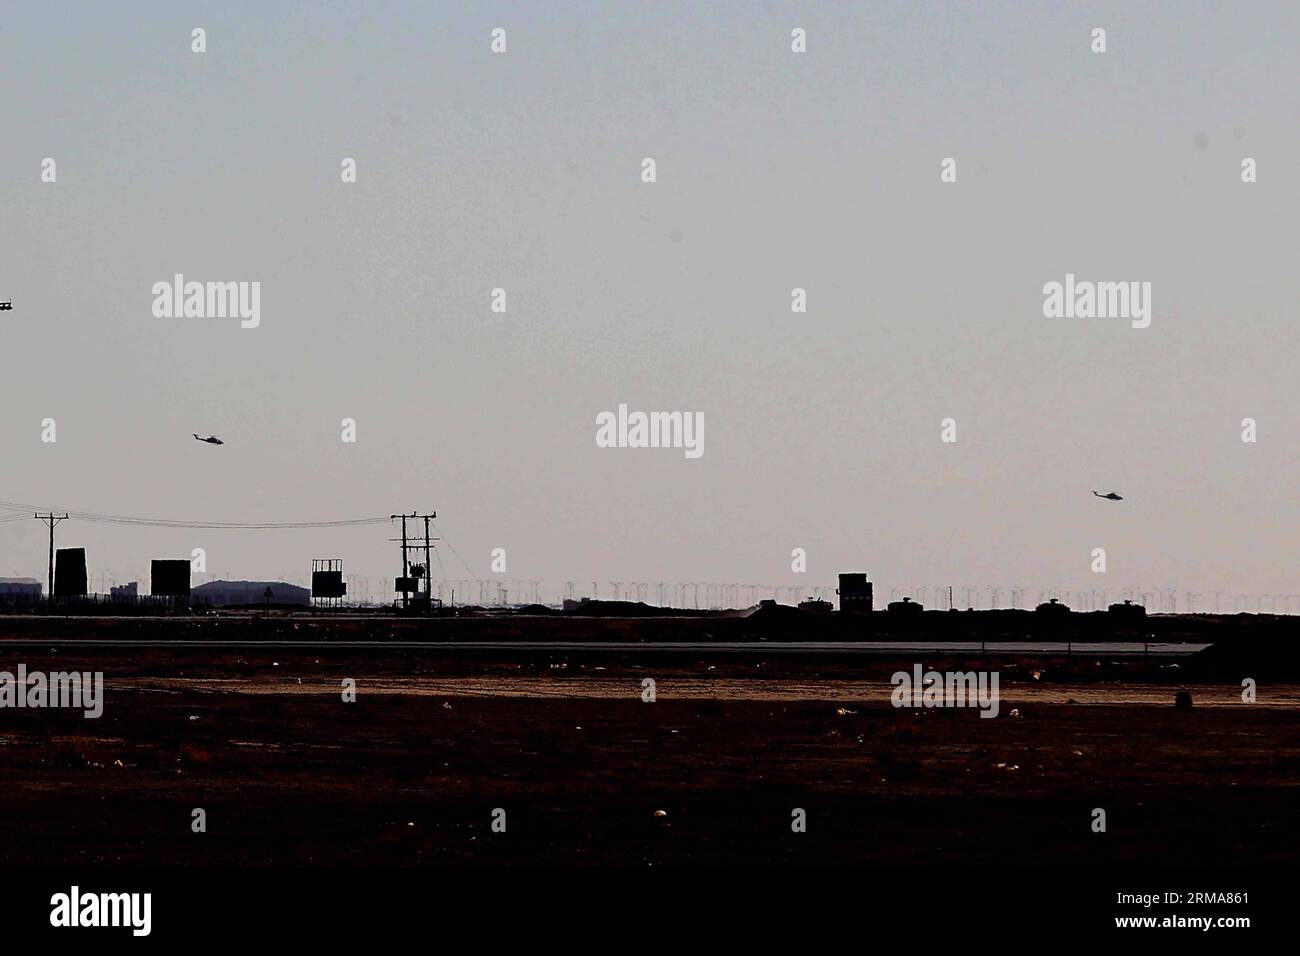 (140624) -- ATTRAVERSAMENTO AL KARAMAH, 24 giugno 2014 (Xinhua) -- due elicotteri militari giordani sono visti volare sopra l'area del confine tra Iraq e Giordania, il 23 giugno 2014. Lunedì la Giordania ha iniziato a mobilitare le forze lungo il confine con l'Iraq per evitare infiltrazioni di militanti sunniti in un peggioramento della situazione della sicurezza in Iraq. (Xinhua/Mohammad Abu Ghosh) (zjl) JORDAN-AL KARAMAH CROSSING-IRAQ-PREVENTION PUBLICATIONxNOTxINxCHN al Crossing 24 giugno 2014 XINHUA due elicotteri militari giordani sono laghi che sorvolano la zona di confine con la Giordania IL 23 giugno 2014 la Giordania ha iniziato lunedì Mobi Foto Stock